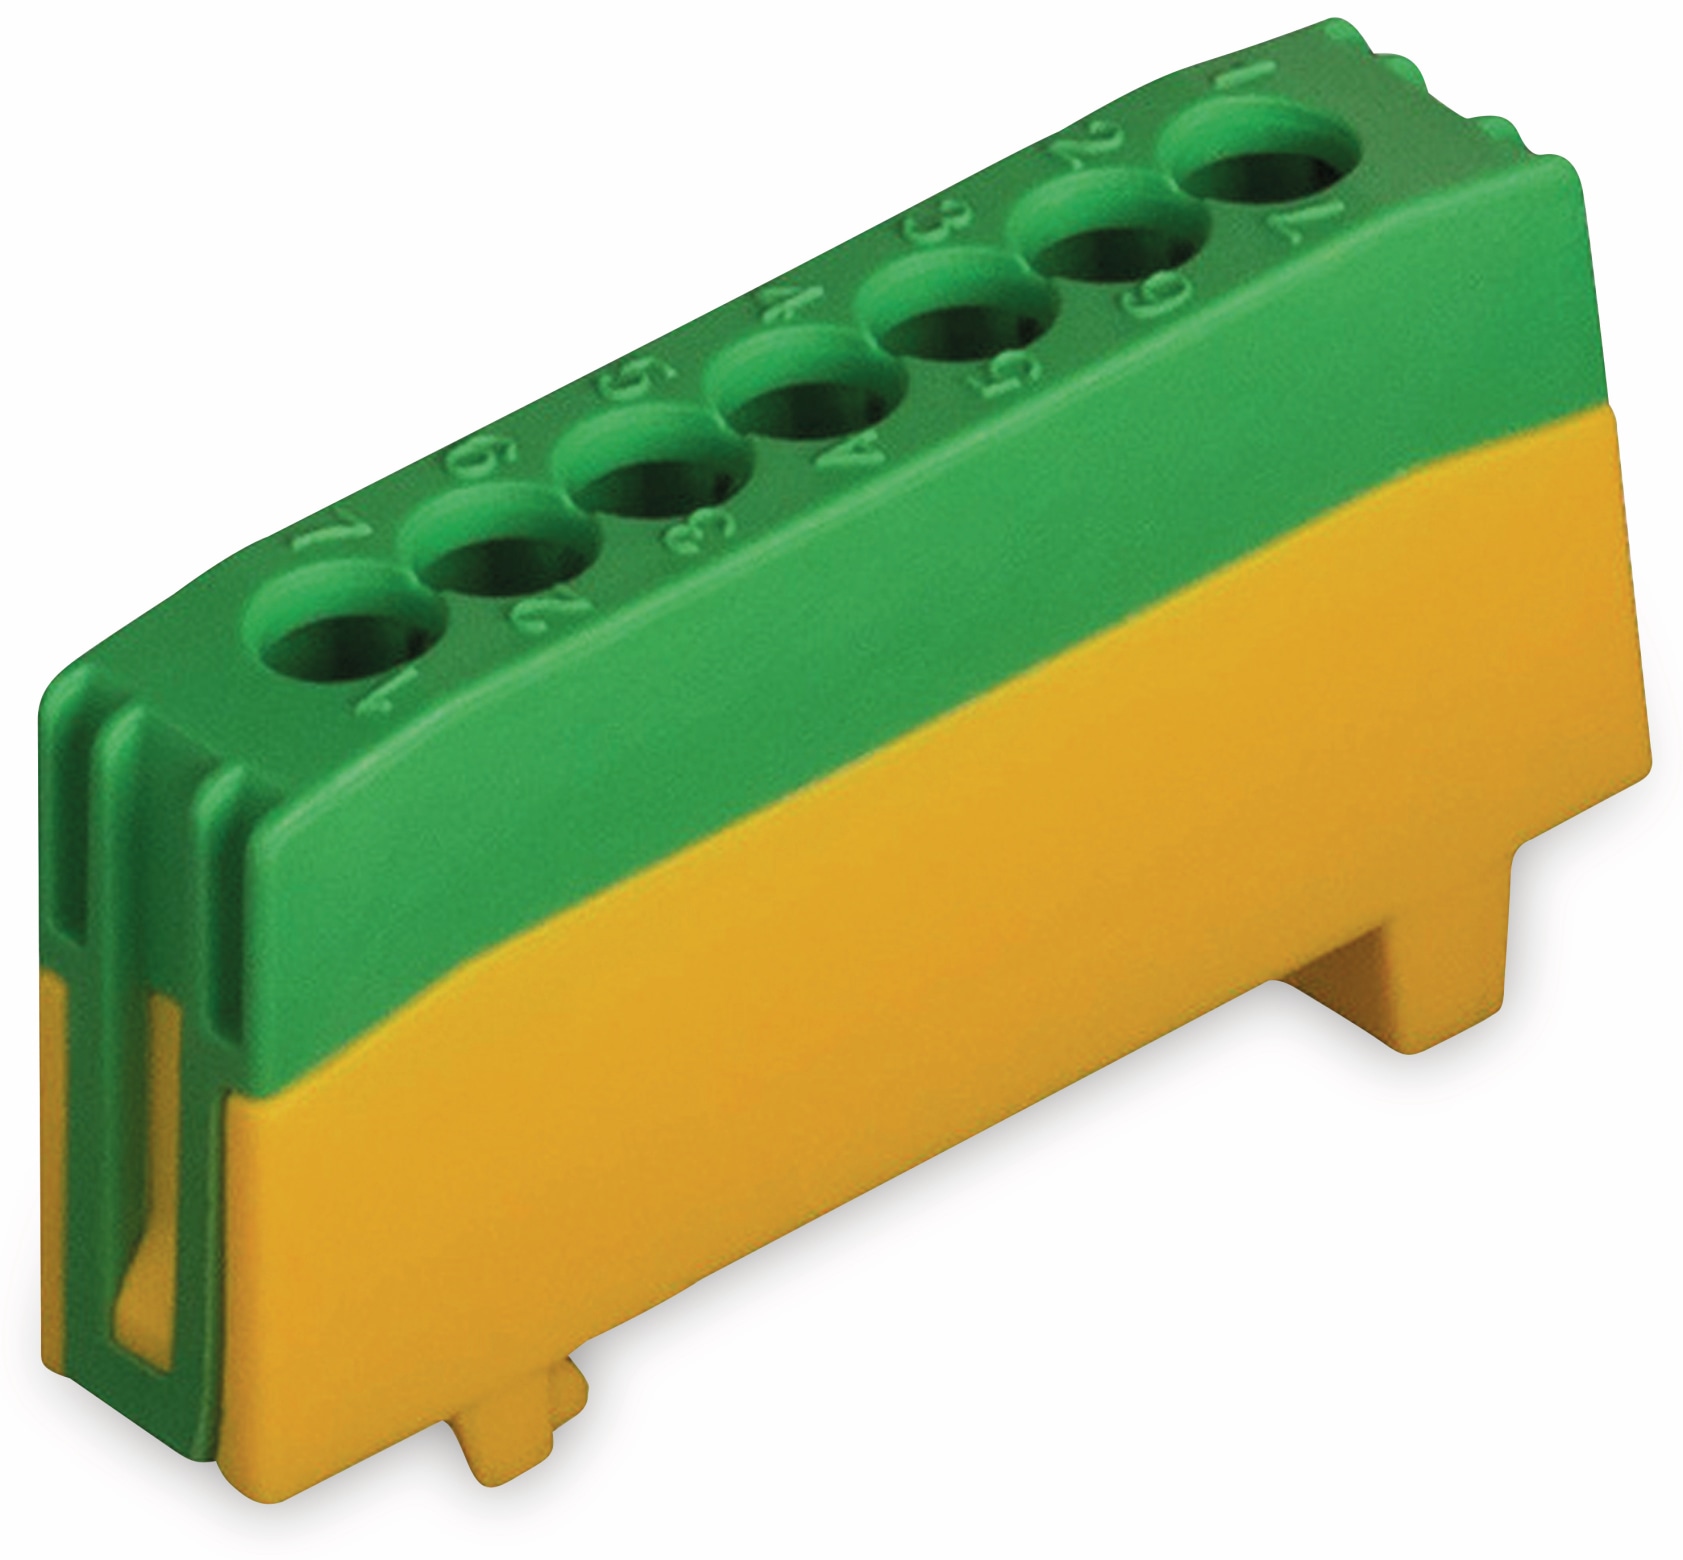 POLLMANN Schutzleiterklemme 7-polig, 16 mm², grün/gelb, für Hutschiene